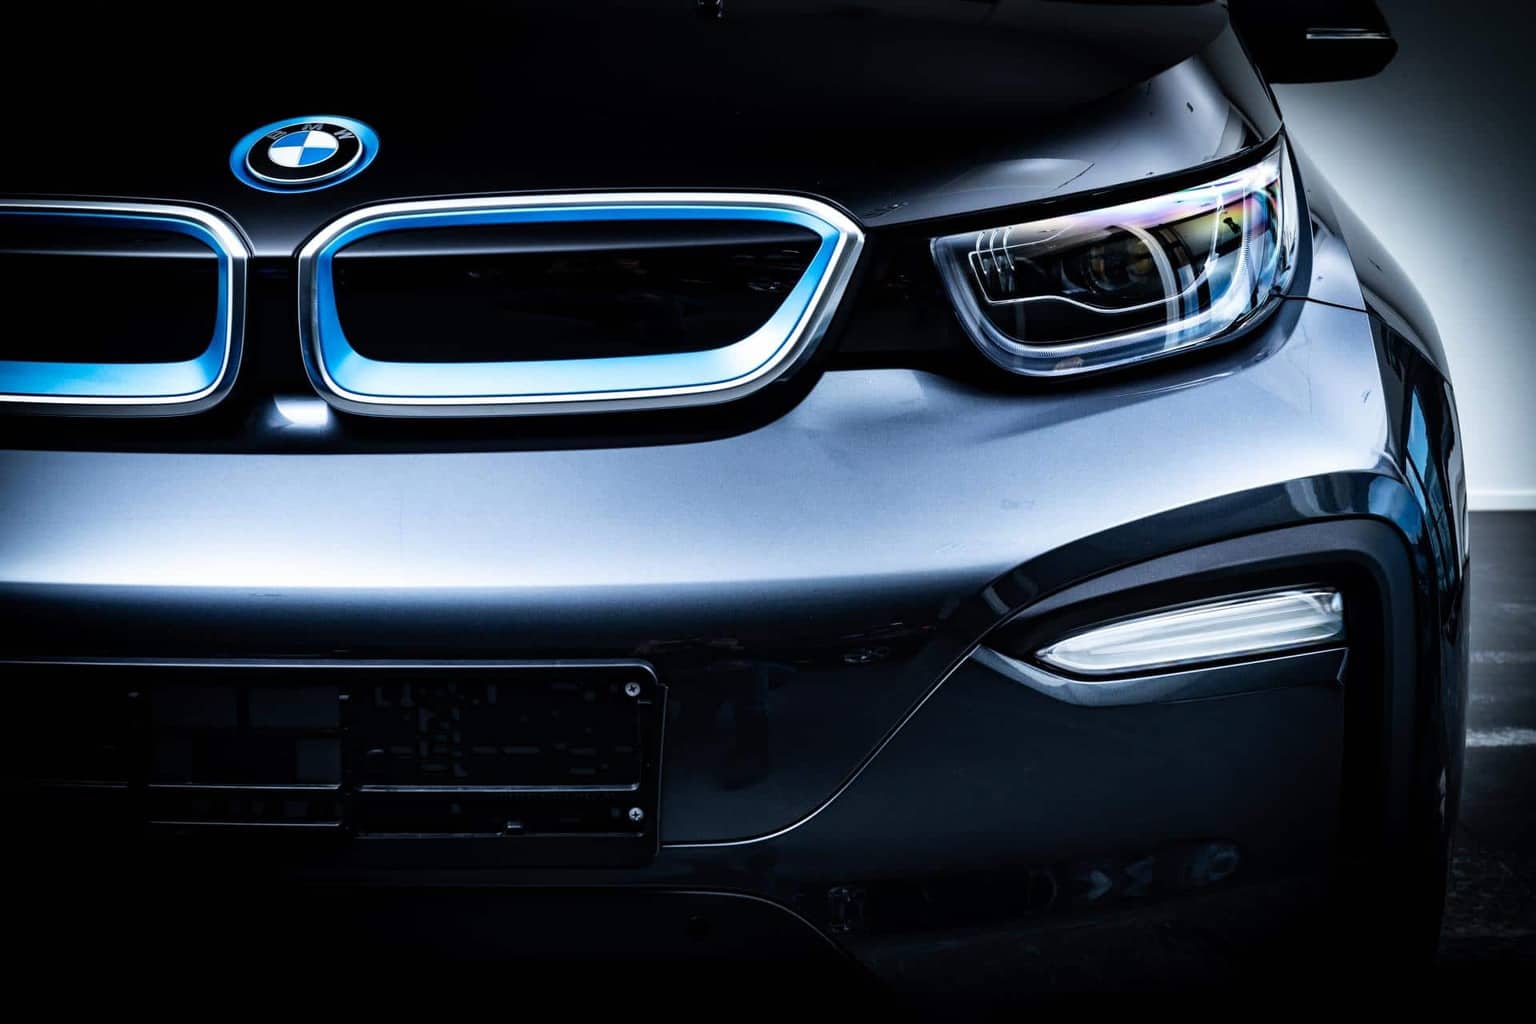 BMWs neuer Entwicklungschef Weber will Elektromobilität beschleunigen